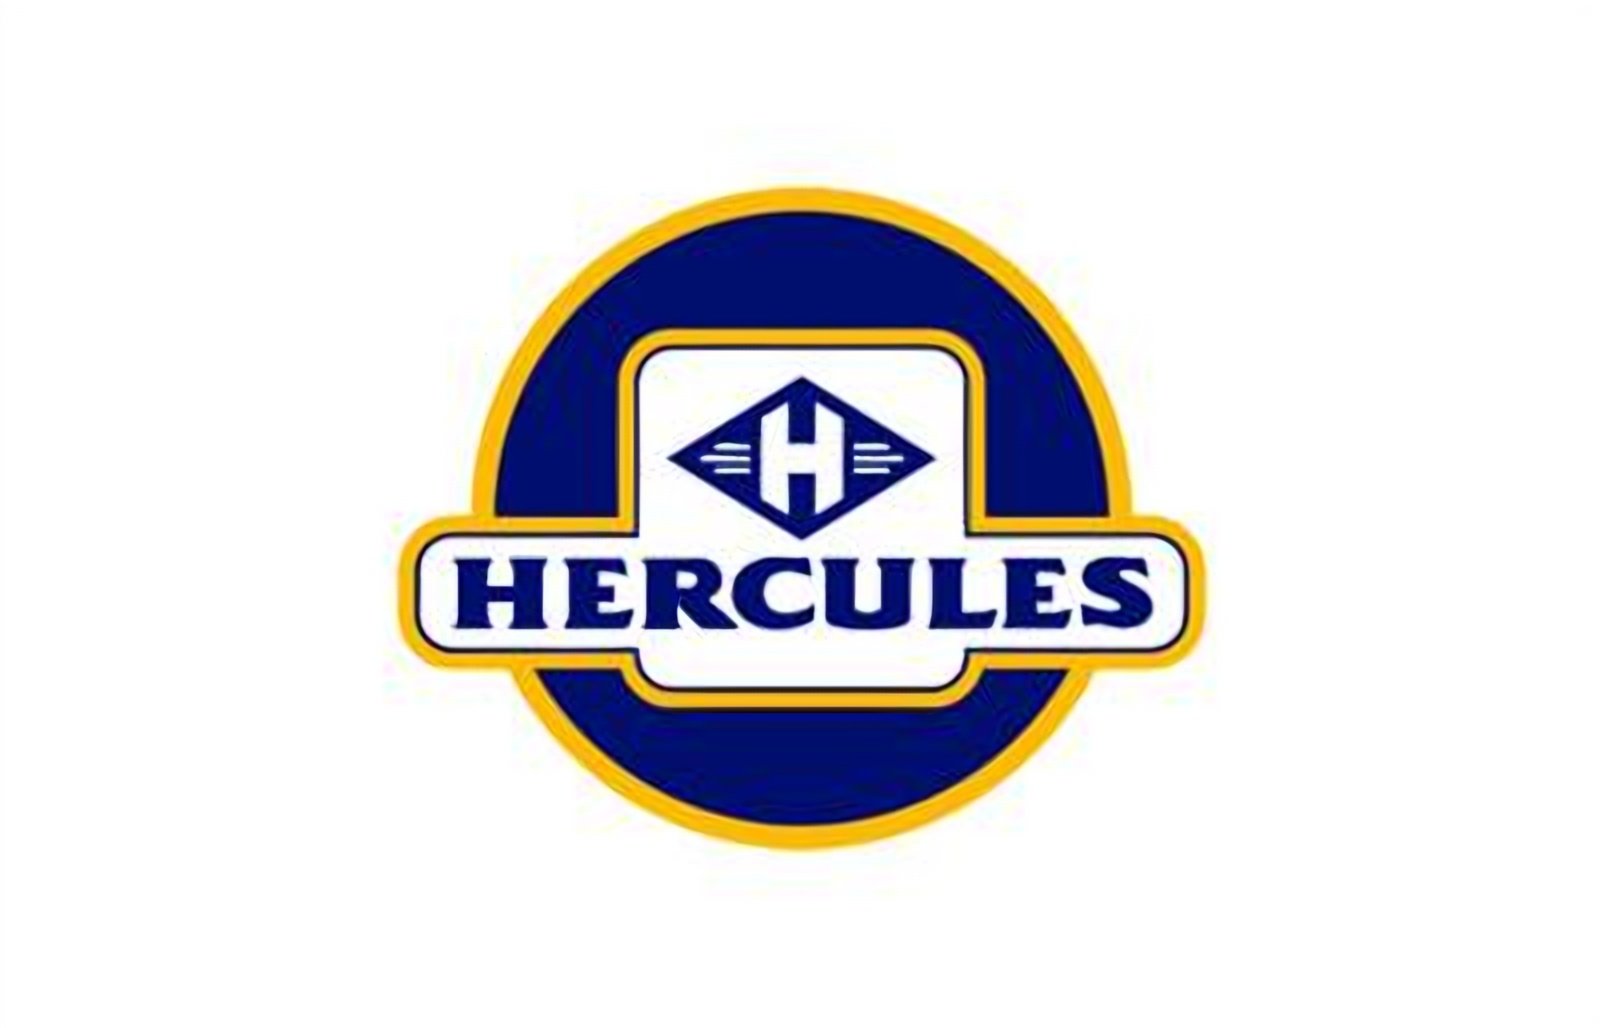 logo della collezione batterie hercules di puntobatterie